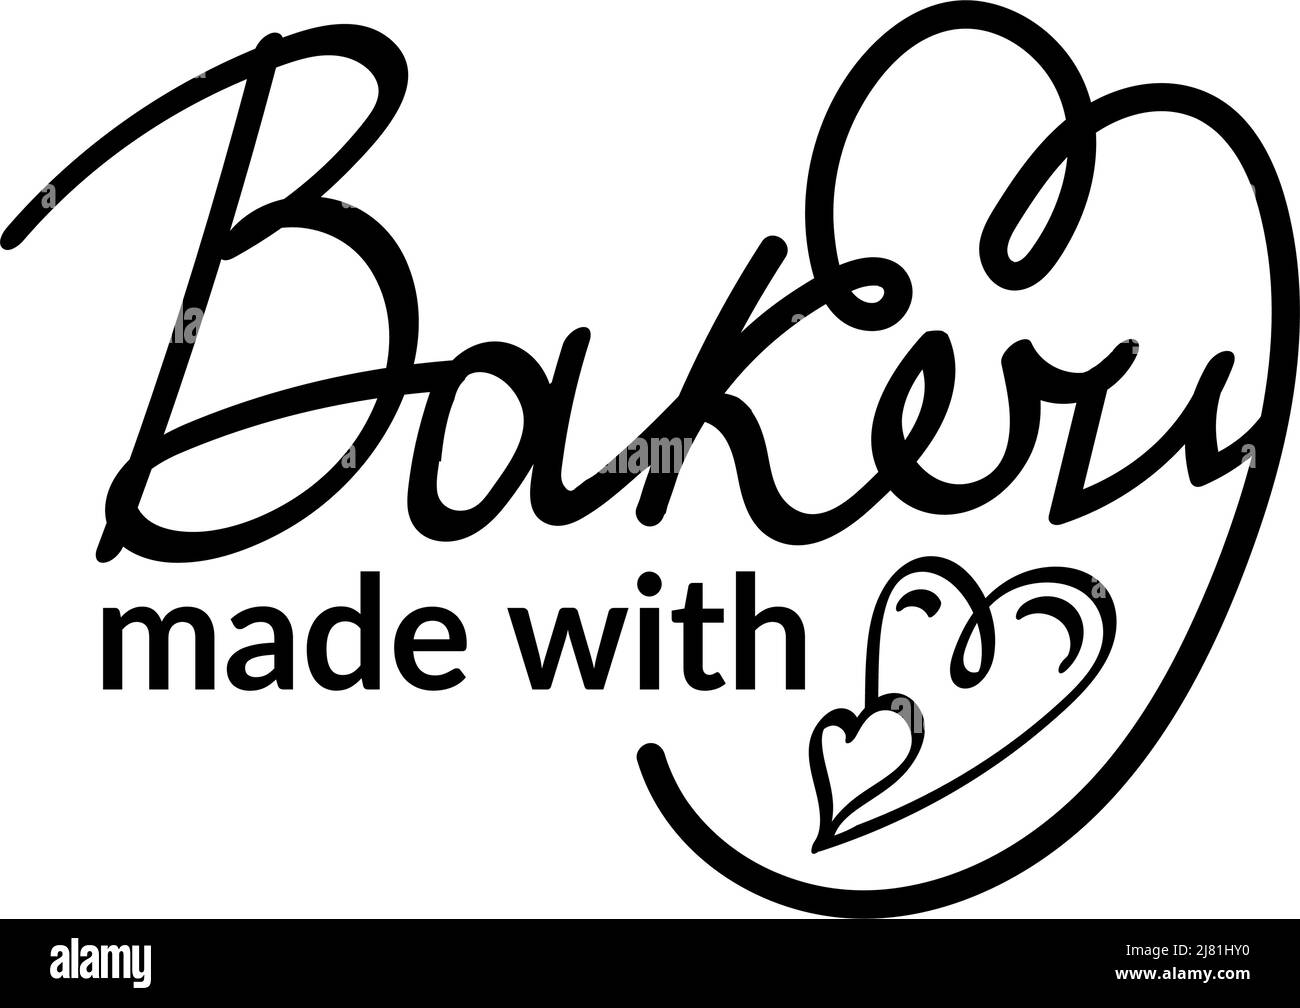 Stilisierte handgeschriebene Schriftzüge, handgezeichnet. Bäckerei mit Liebe gemacht. Küche, Café, Restaurant-Dekor. Zwei Herzen in einem. Vektorgrafik Stock Vektor